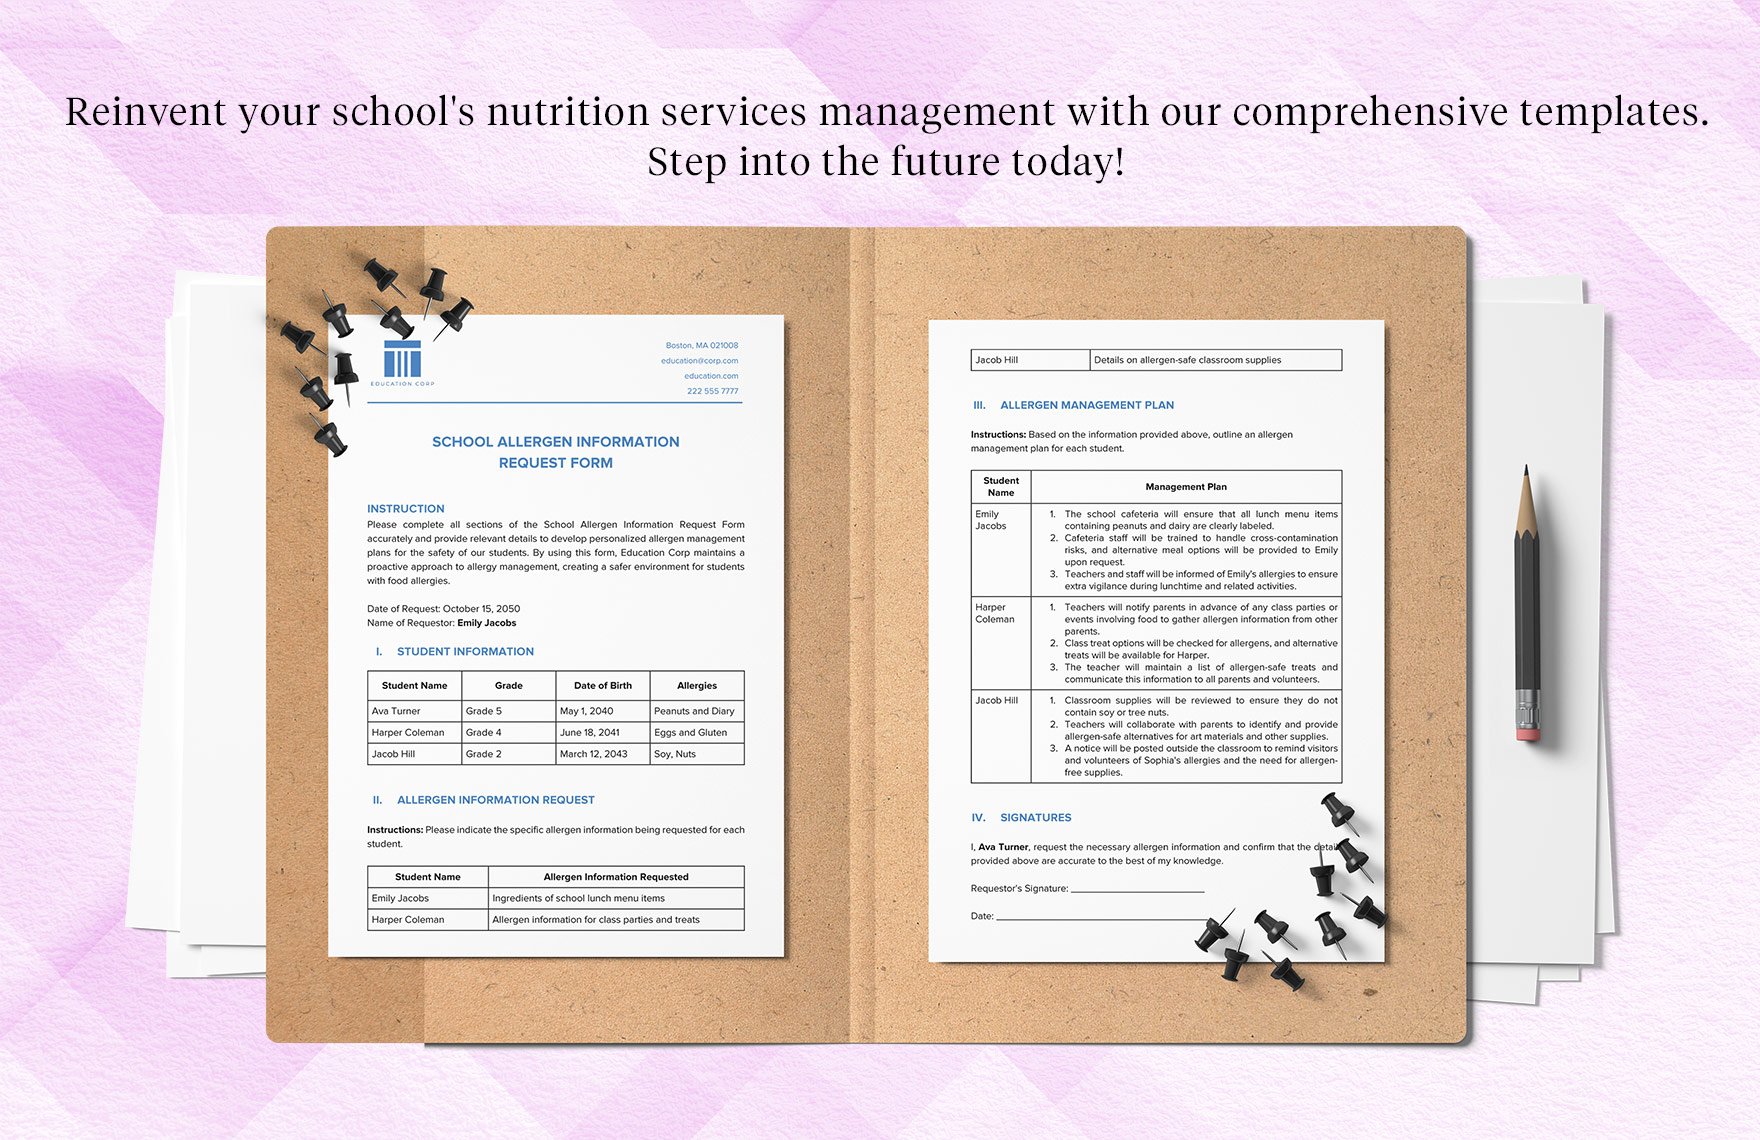 School Allergen Information Request Form Template